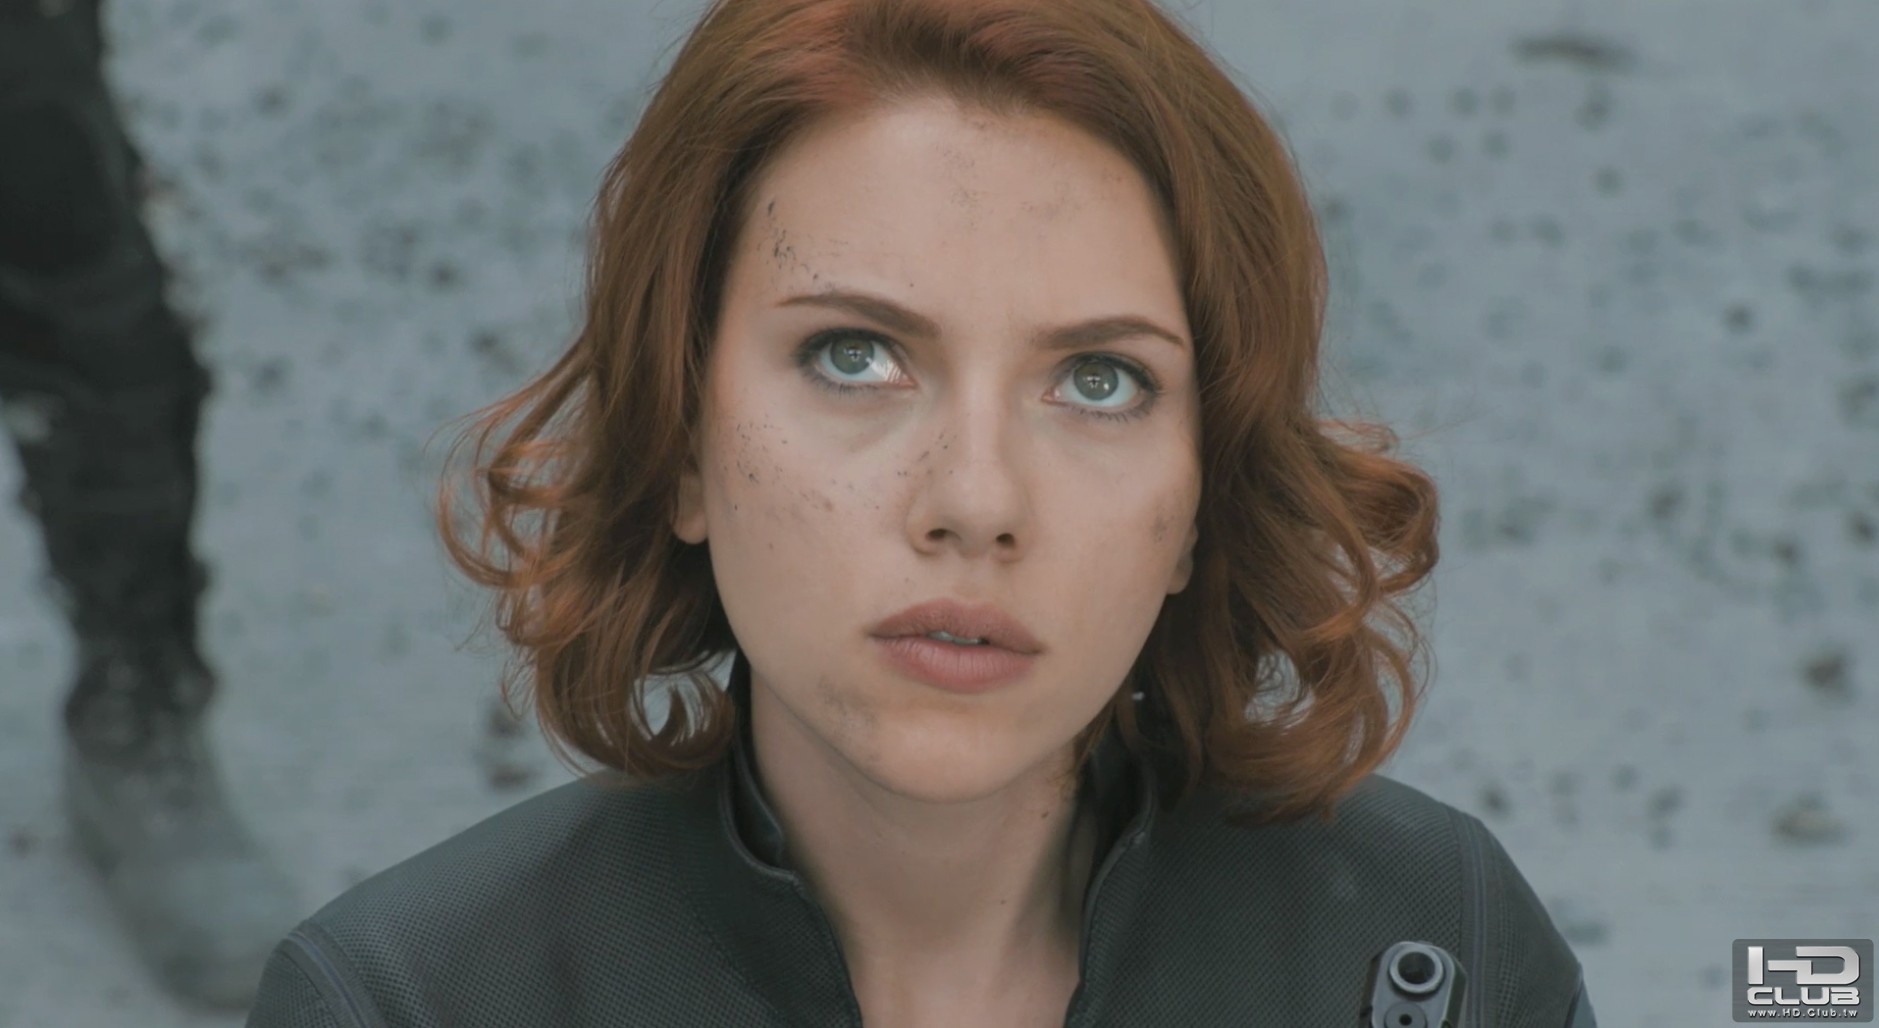 Scarlett-Johansson-The-Avengers-movie-image.jpg